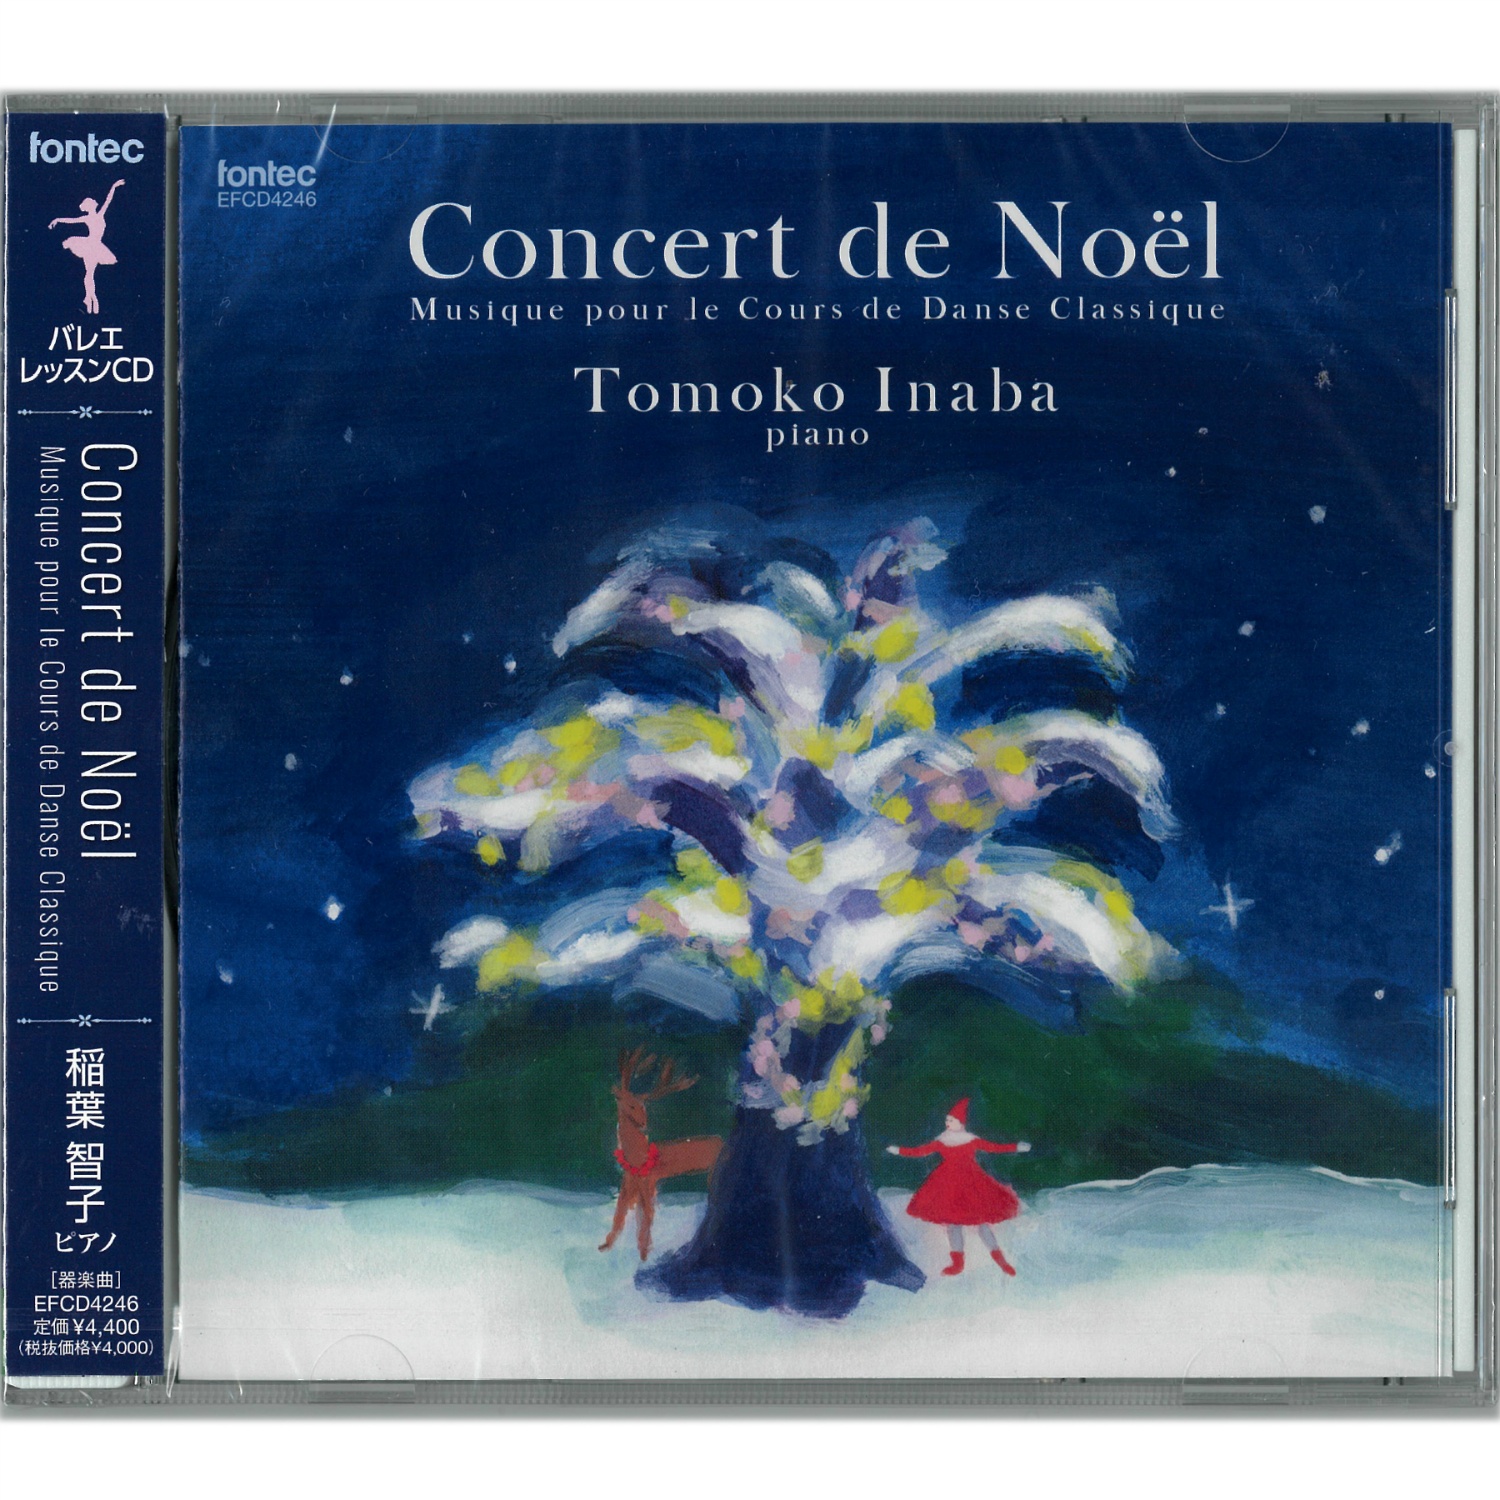 CD】稲葉智子「Concert de Noel Musique pour le Cours de danse